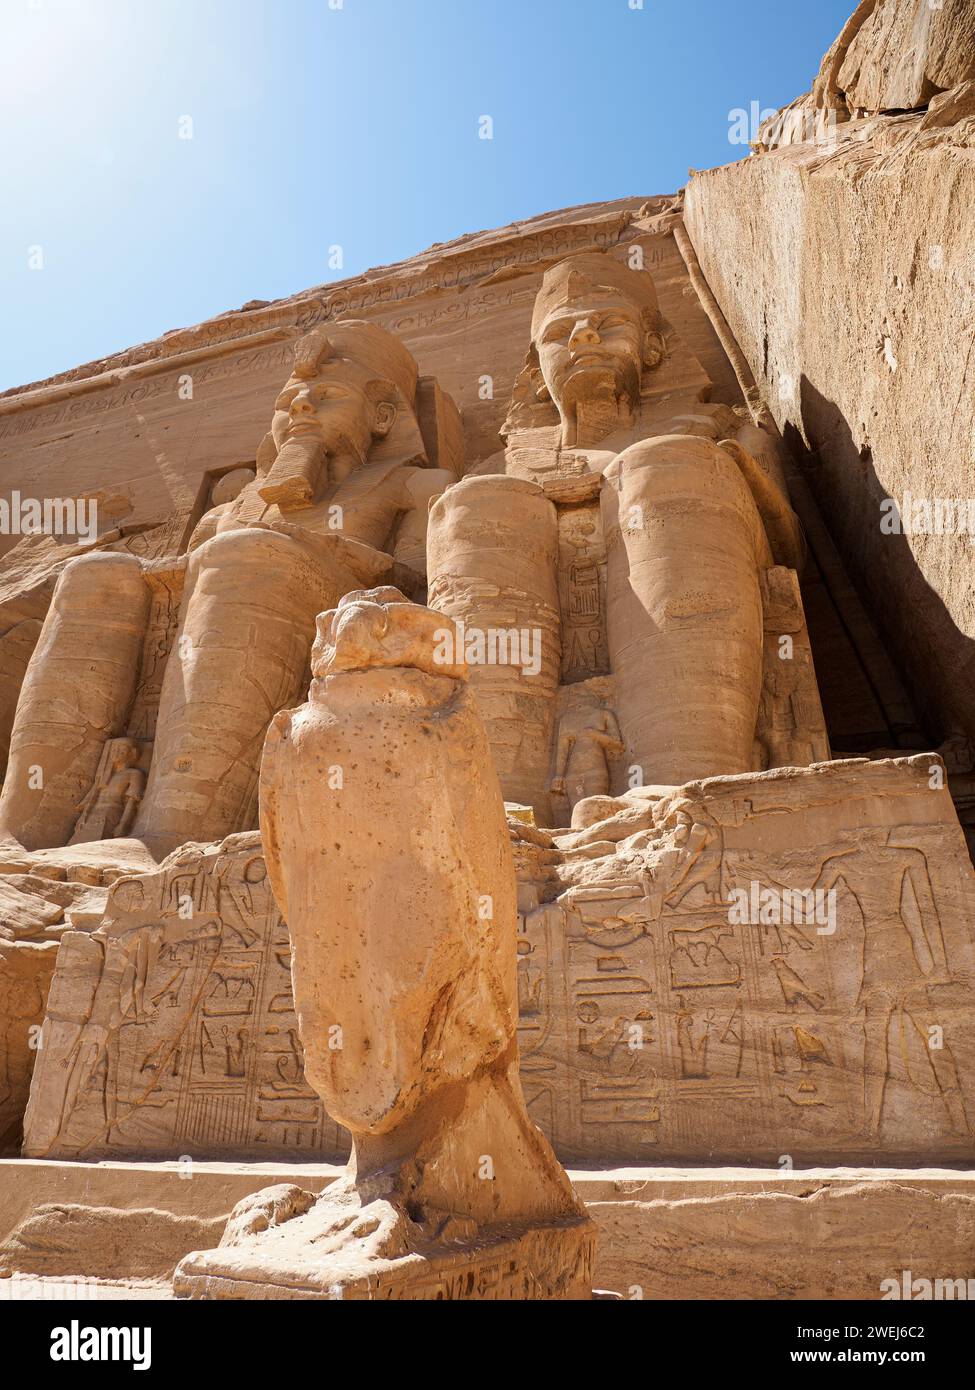 Le Grand Temple d'Abou Simbel avec ses quatre statues colossales emblématiques de Ramsès II, en Égypte, de 20 mètres de haut. Banque D'Images